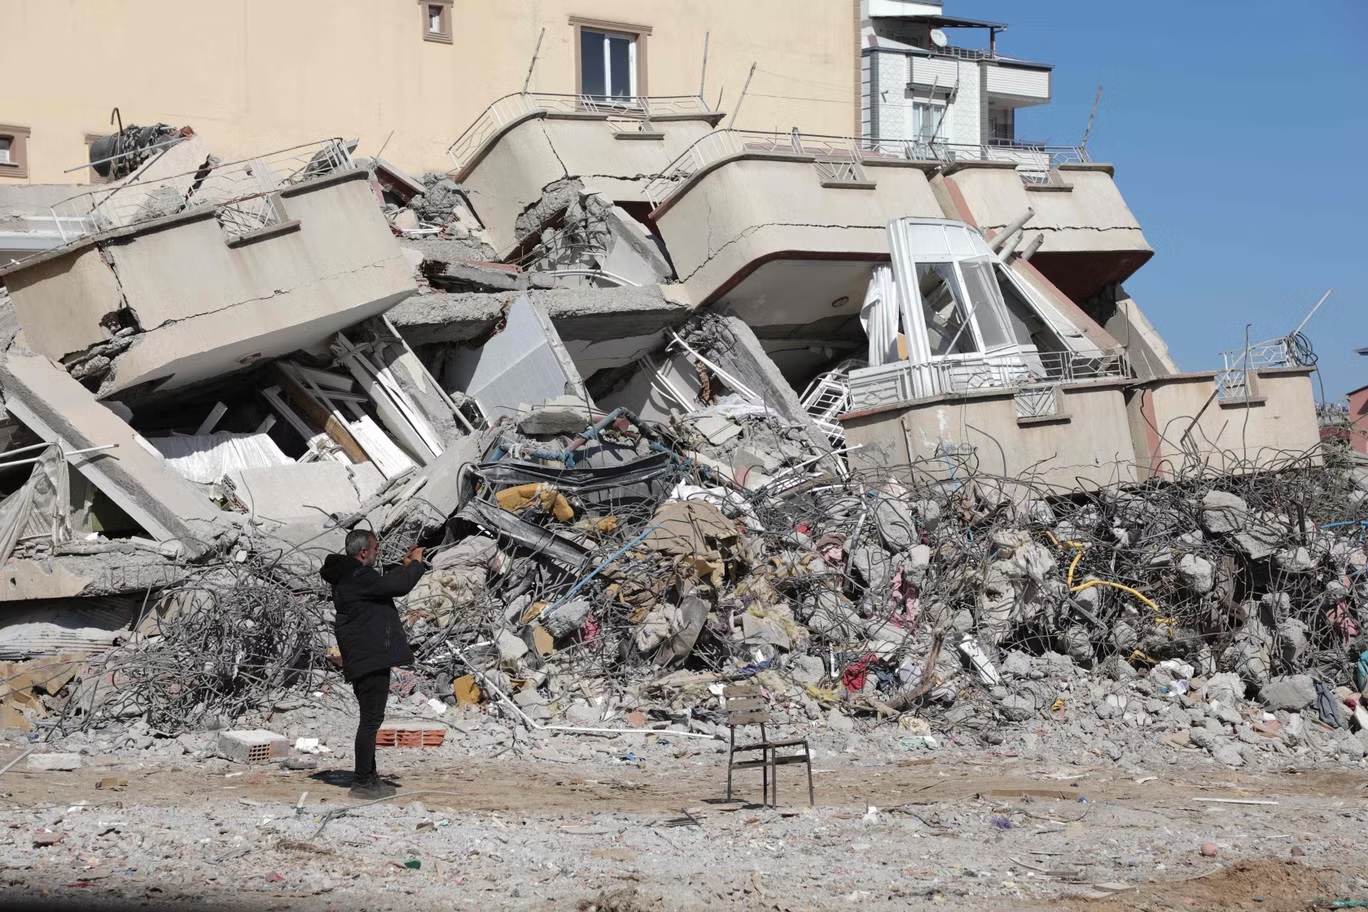 أضرار تسبب بها الزلزال في مدينة إصلاحية، قرب غازي عنتاب (أ ف ب عبر غيتي)